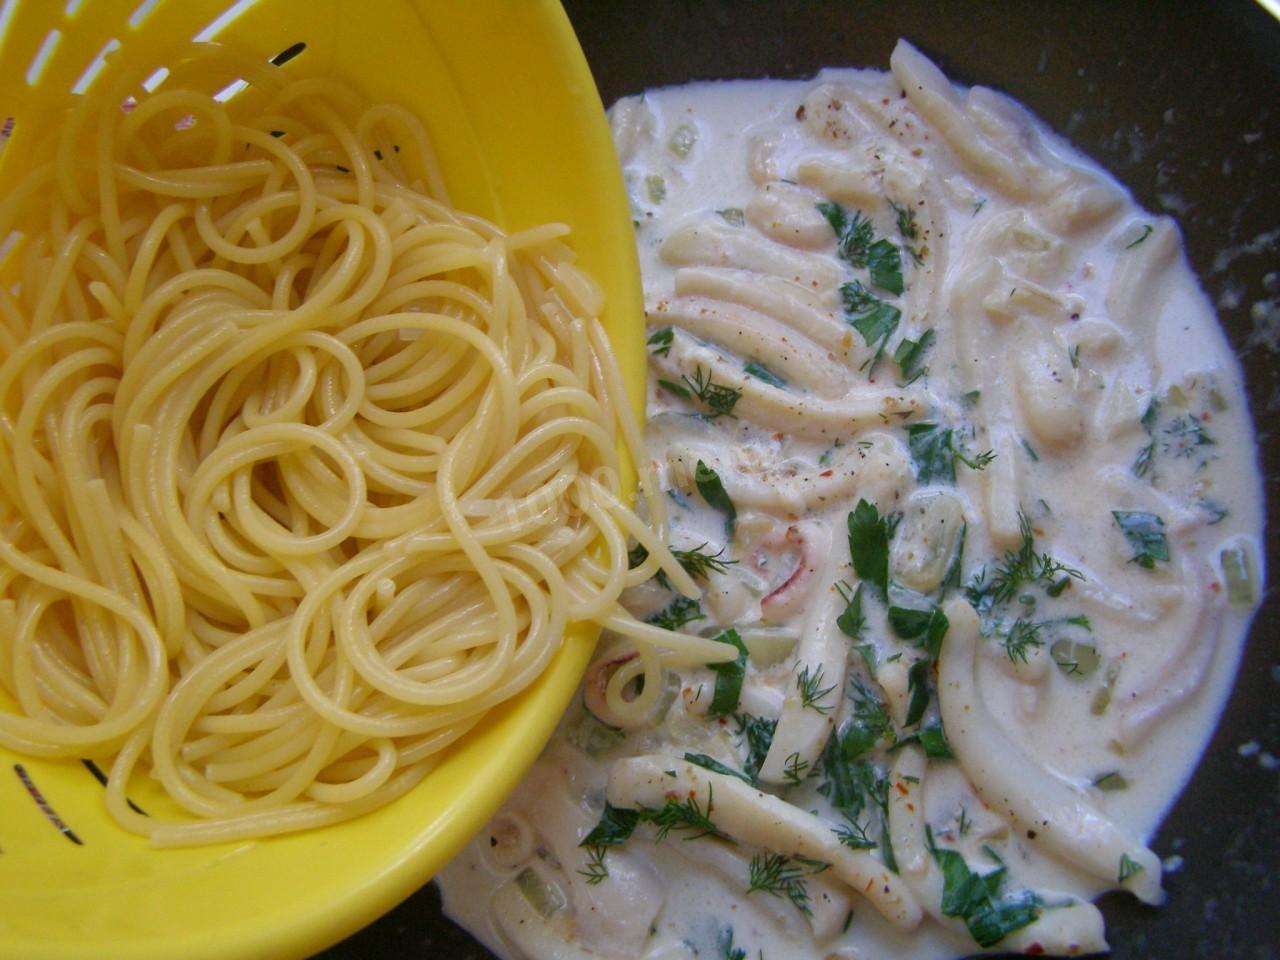 7.	Выложите спагетти в сковороду к кальмарам. Влейте сливки, добавьте помидоры, зелень. Все хорошо и аккуратно перемешайте. Накройте сковороду крышкой и тушите еще 5 минут. В конце посолите, поперчите по вкусу.